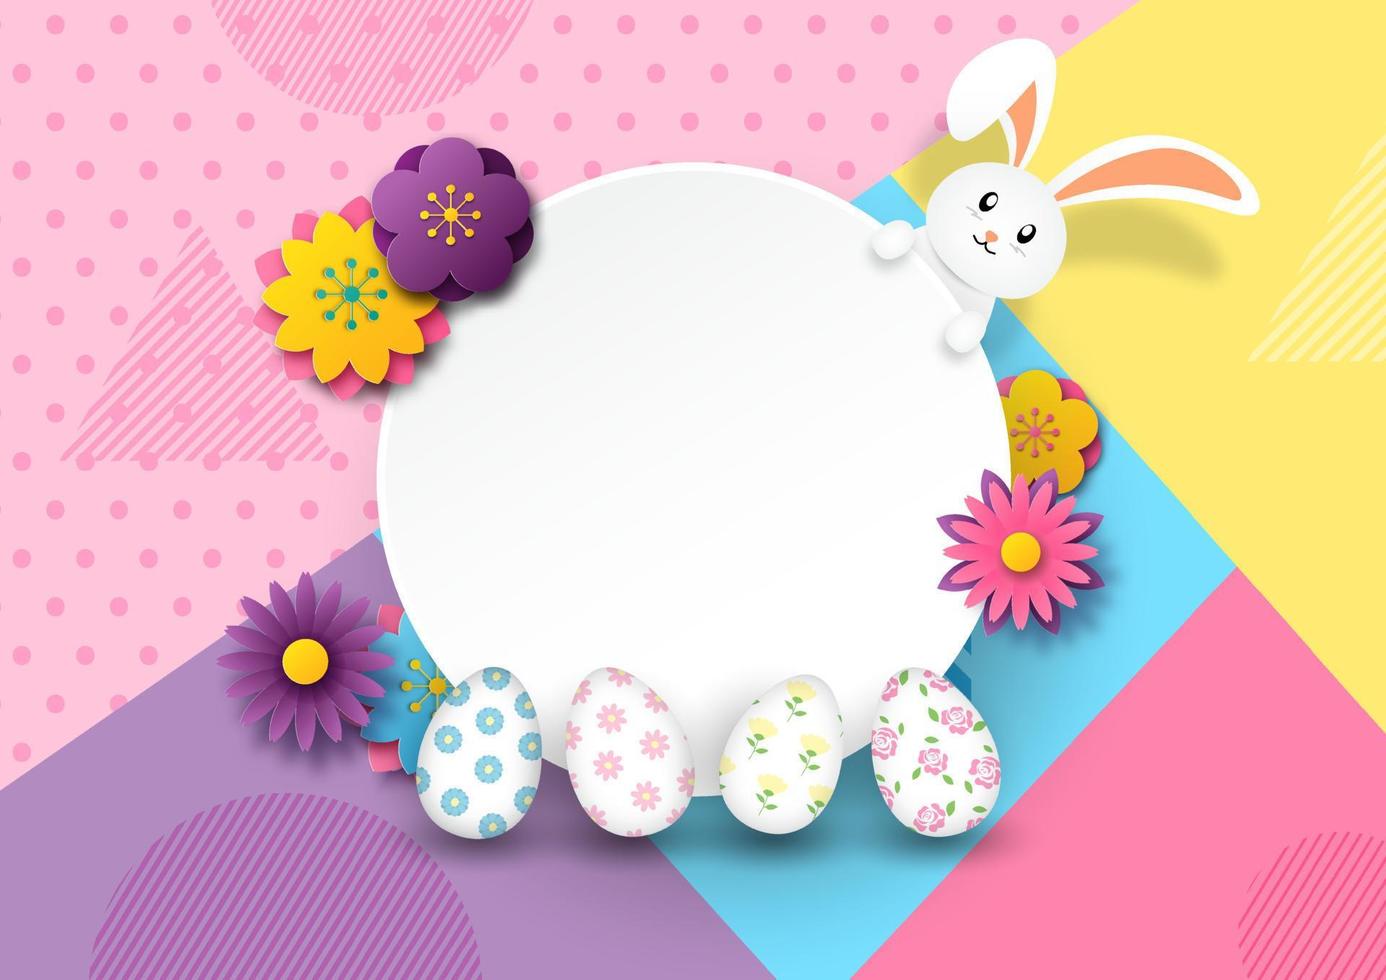 Schönheitsblumen mit Ostereiern auf weißer Fahne und Kaninchen mit Ostereiern und auf buntem abstraktem Formhintergrund. Ostergrußkarte im Scherenschnitt-Stil. vektor